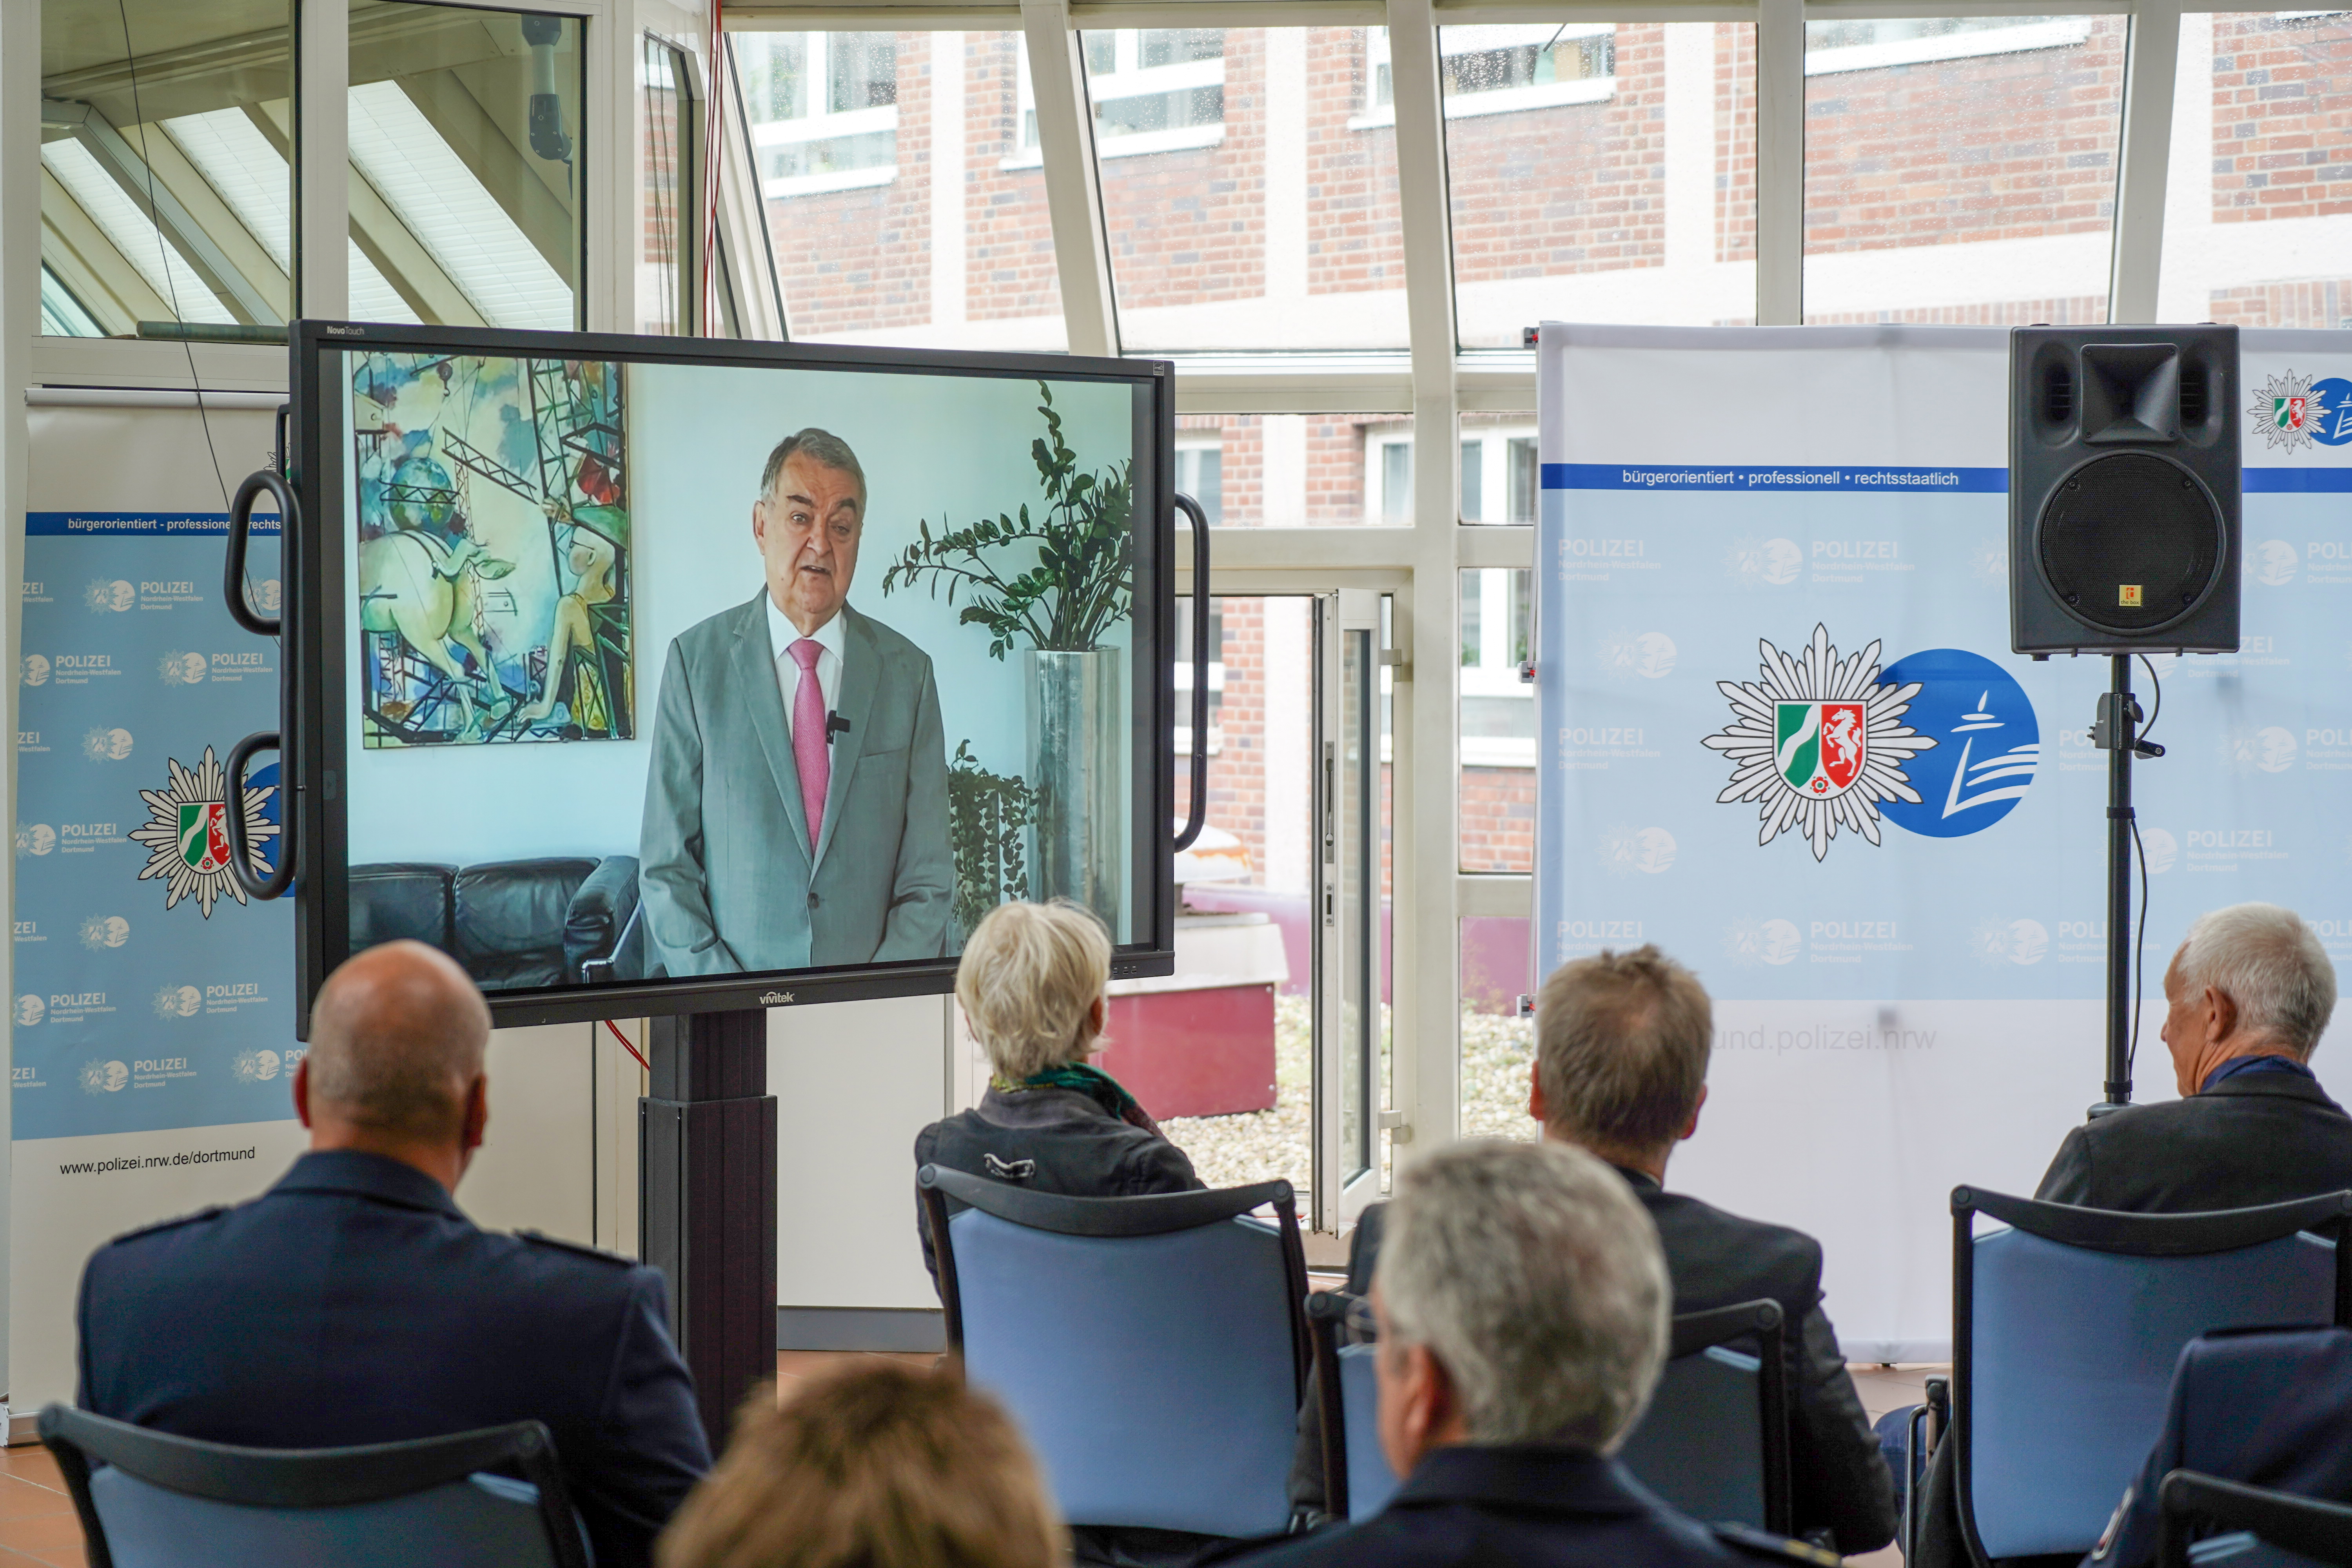 NRW-Innenminister Herbert Reul sprach mit einer Videobotschaft zu den Gästen. Er musste seine Teilnahme am Tag der Werteorientierung kurzfristig absagen. Foto: PP Dortmund